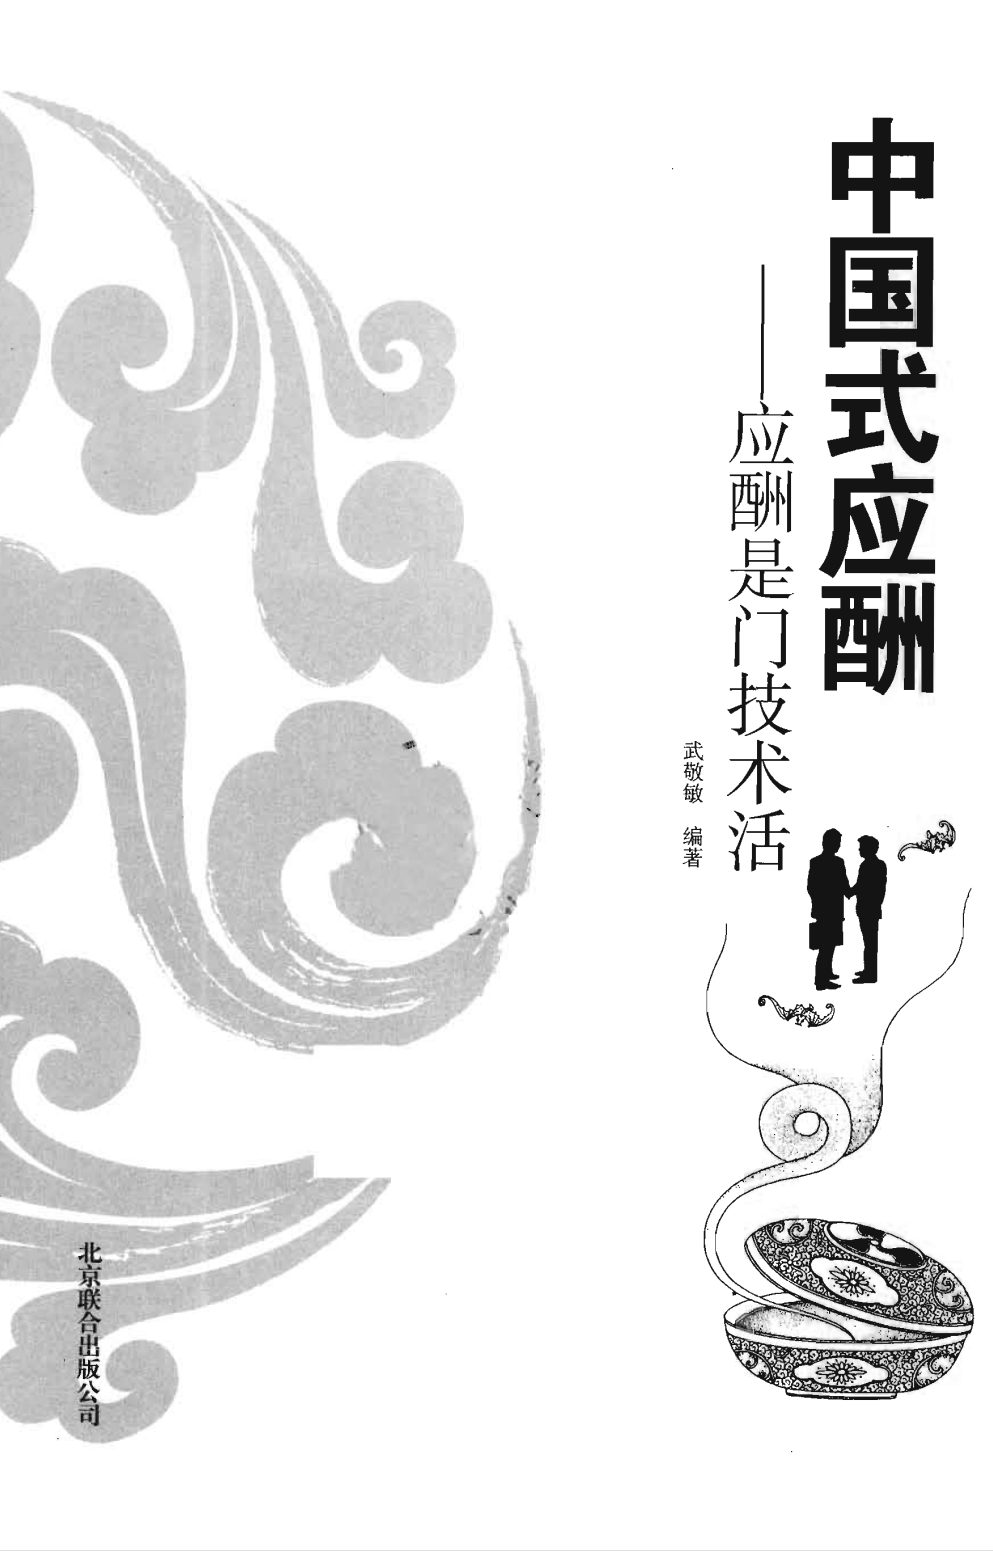 《中国式应酬》武敬敏无水印.pdf「百度网盘下载」PDF 电子书插图